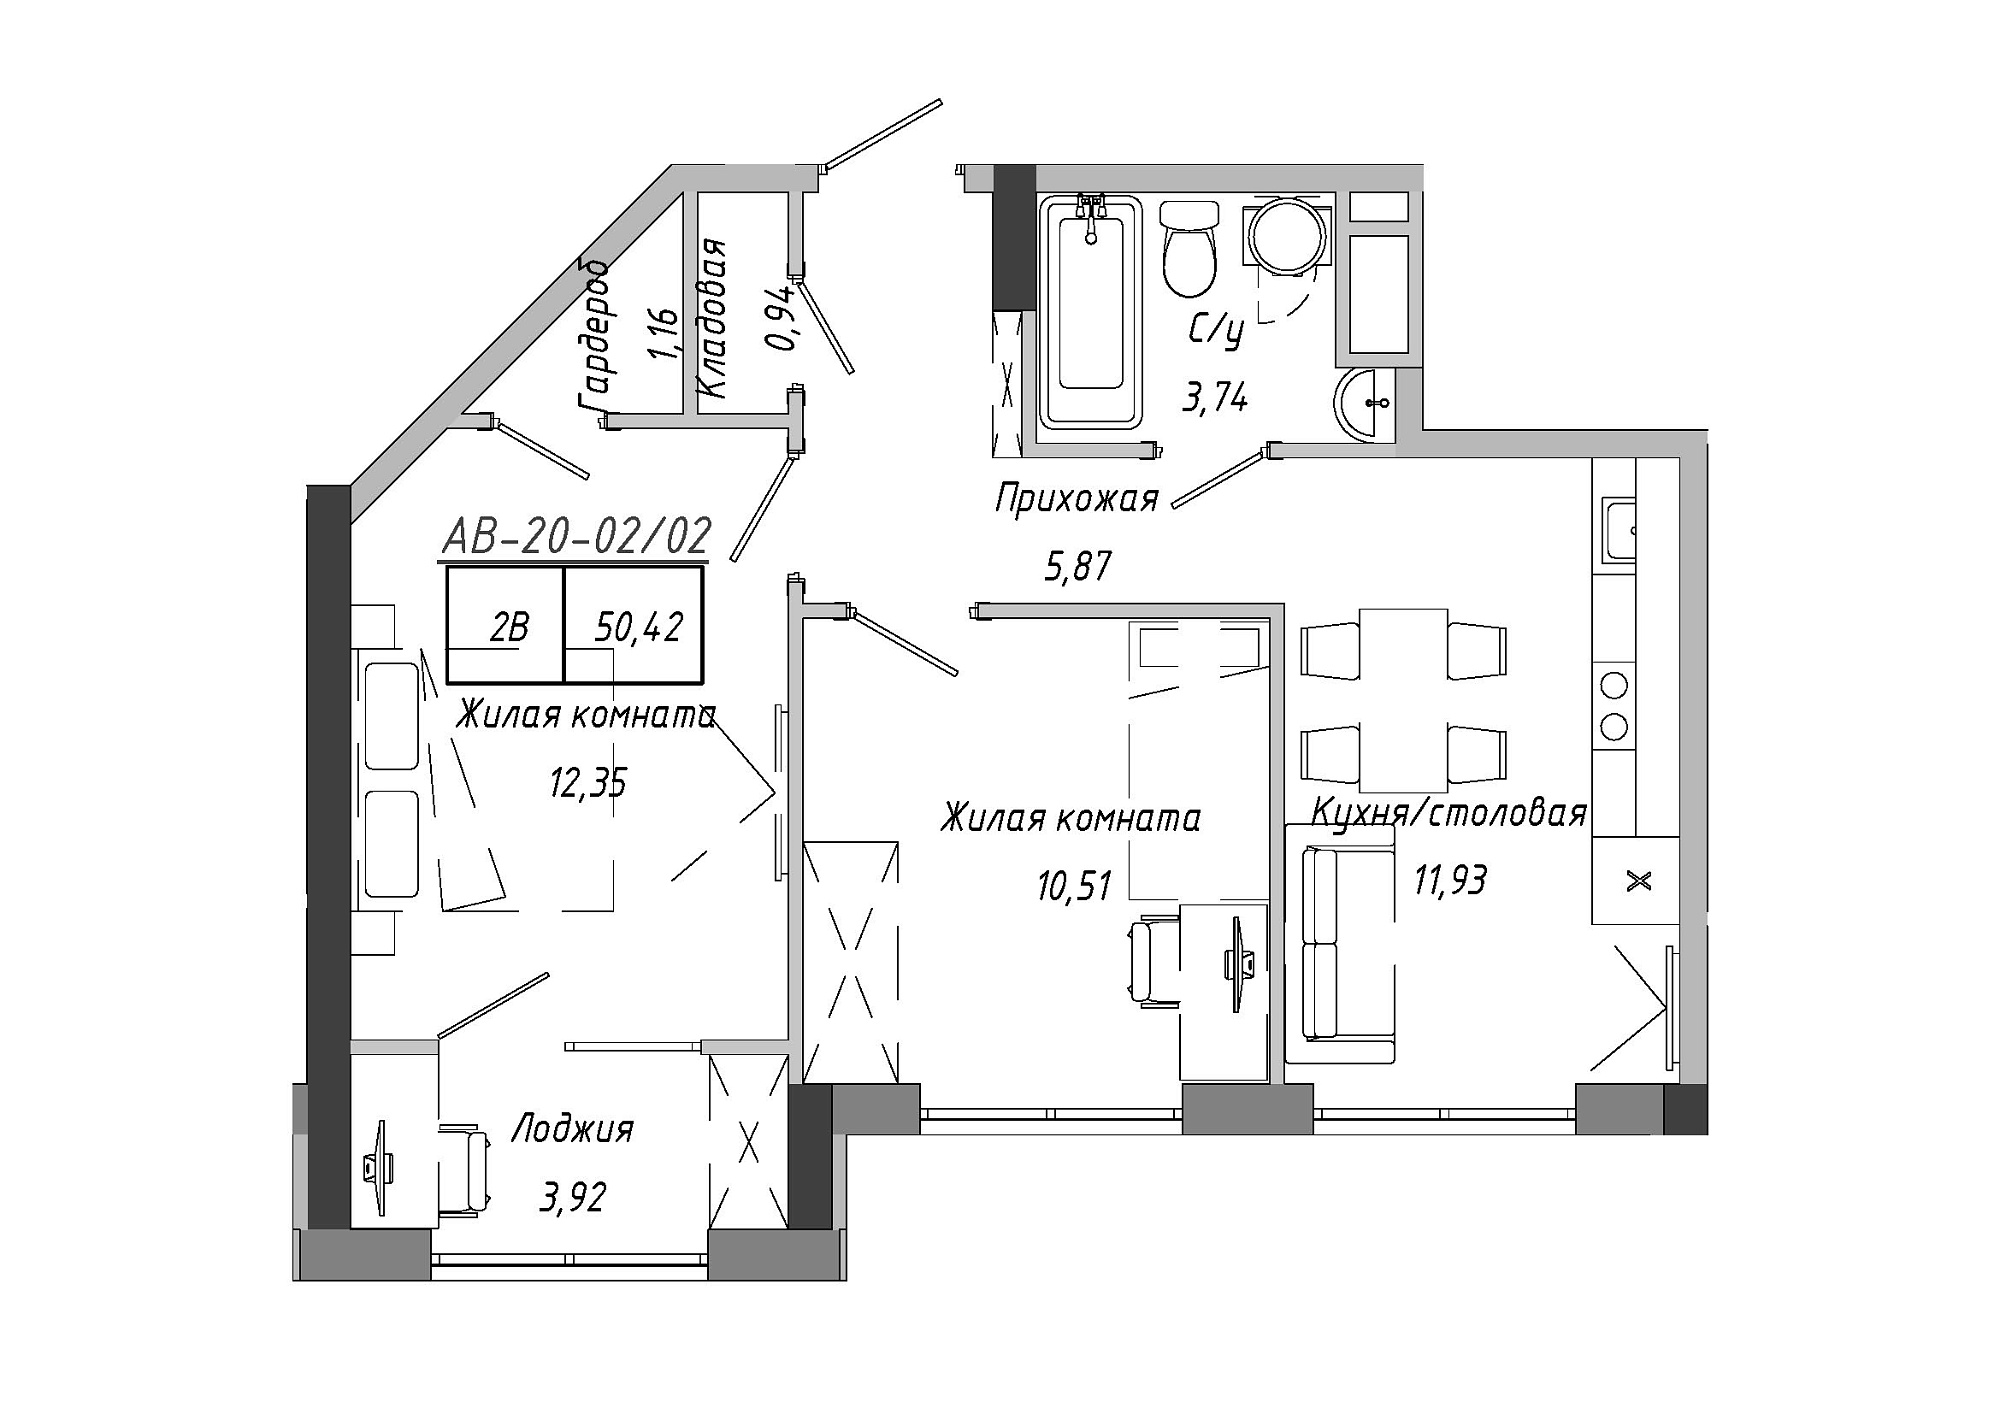 Планування 2-к квартира площею 50.42м2, AB-20-02/00002.